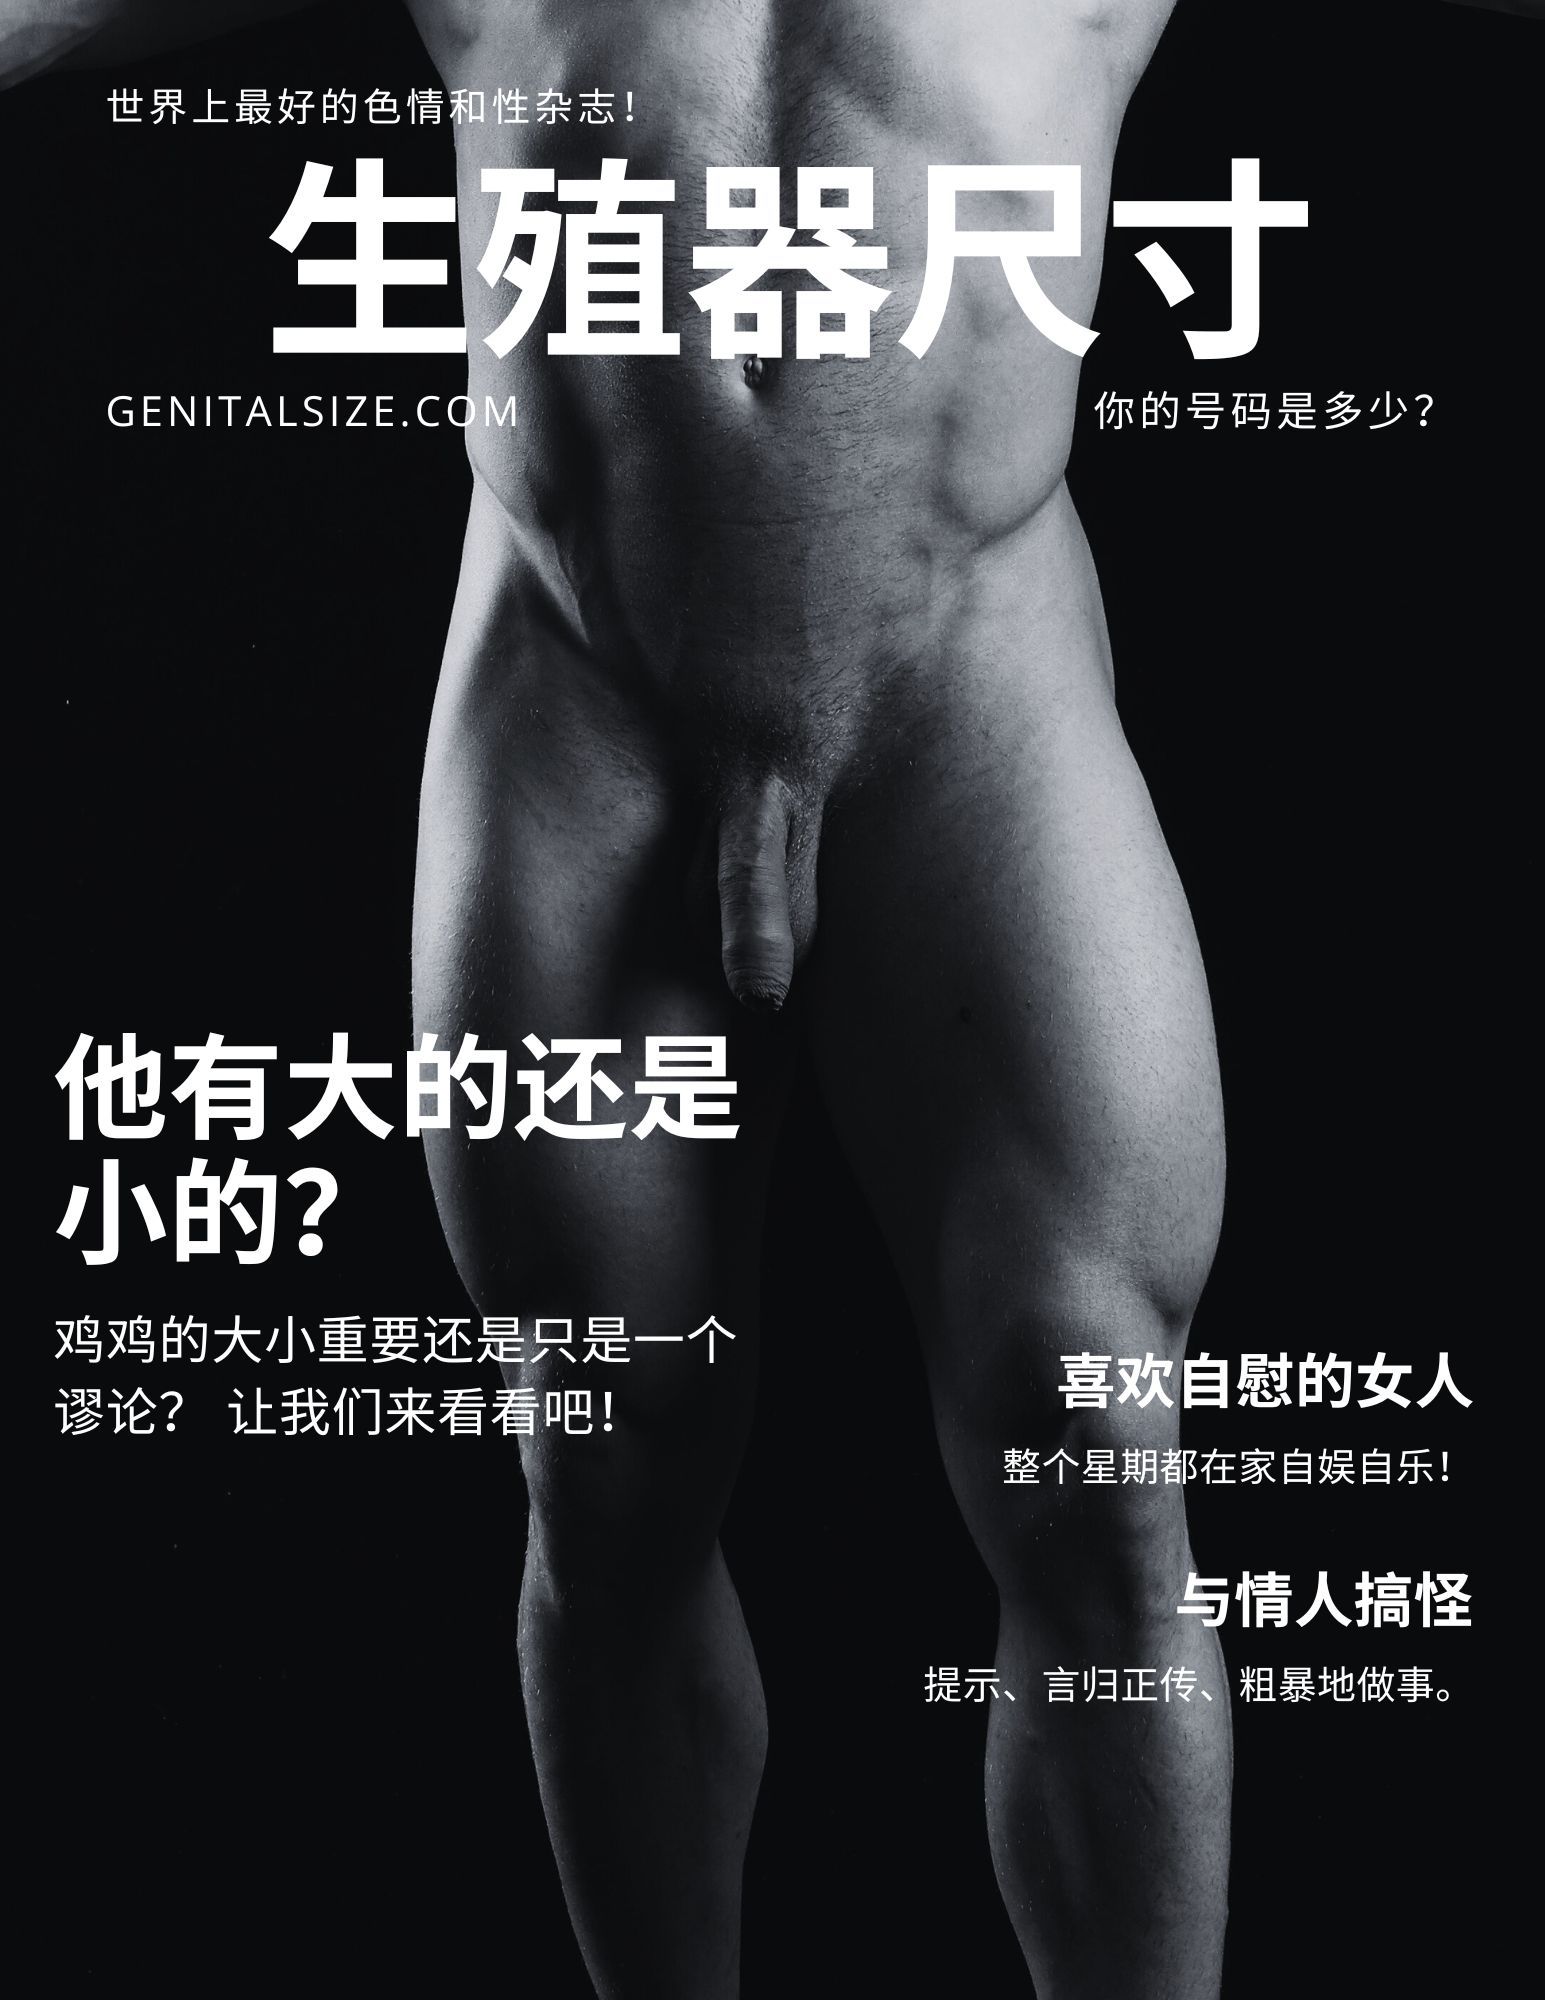 杂志封面上有一个裸体男性躯干，询问他的阴茎有多大？